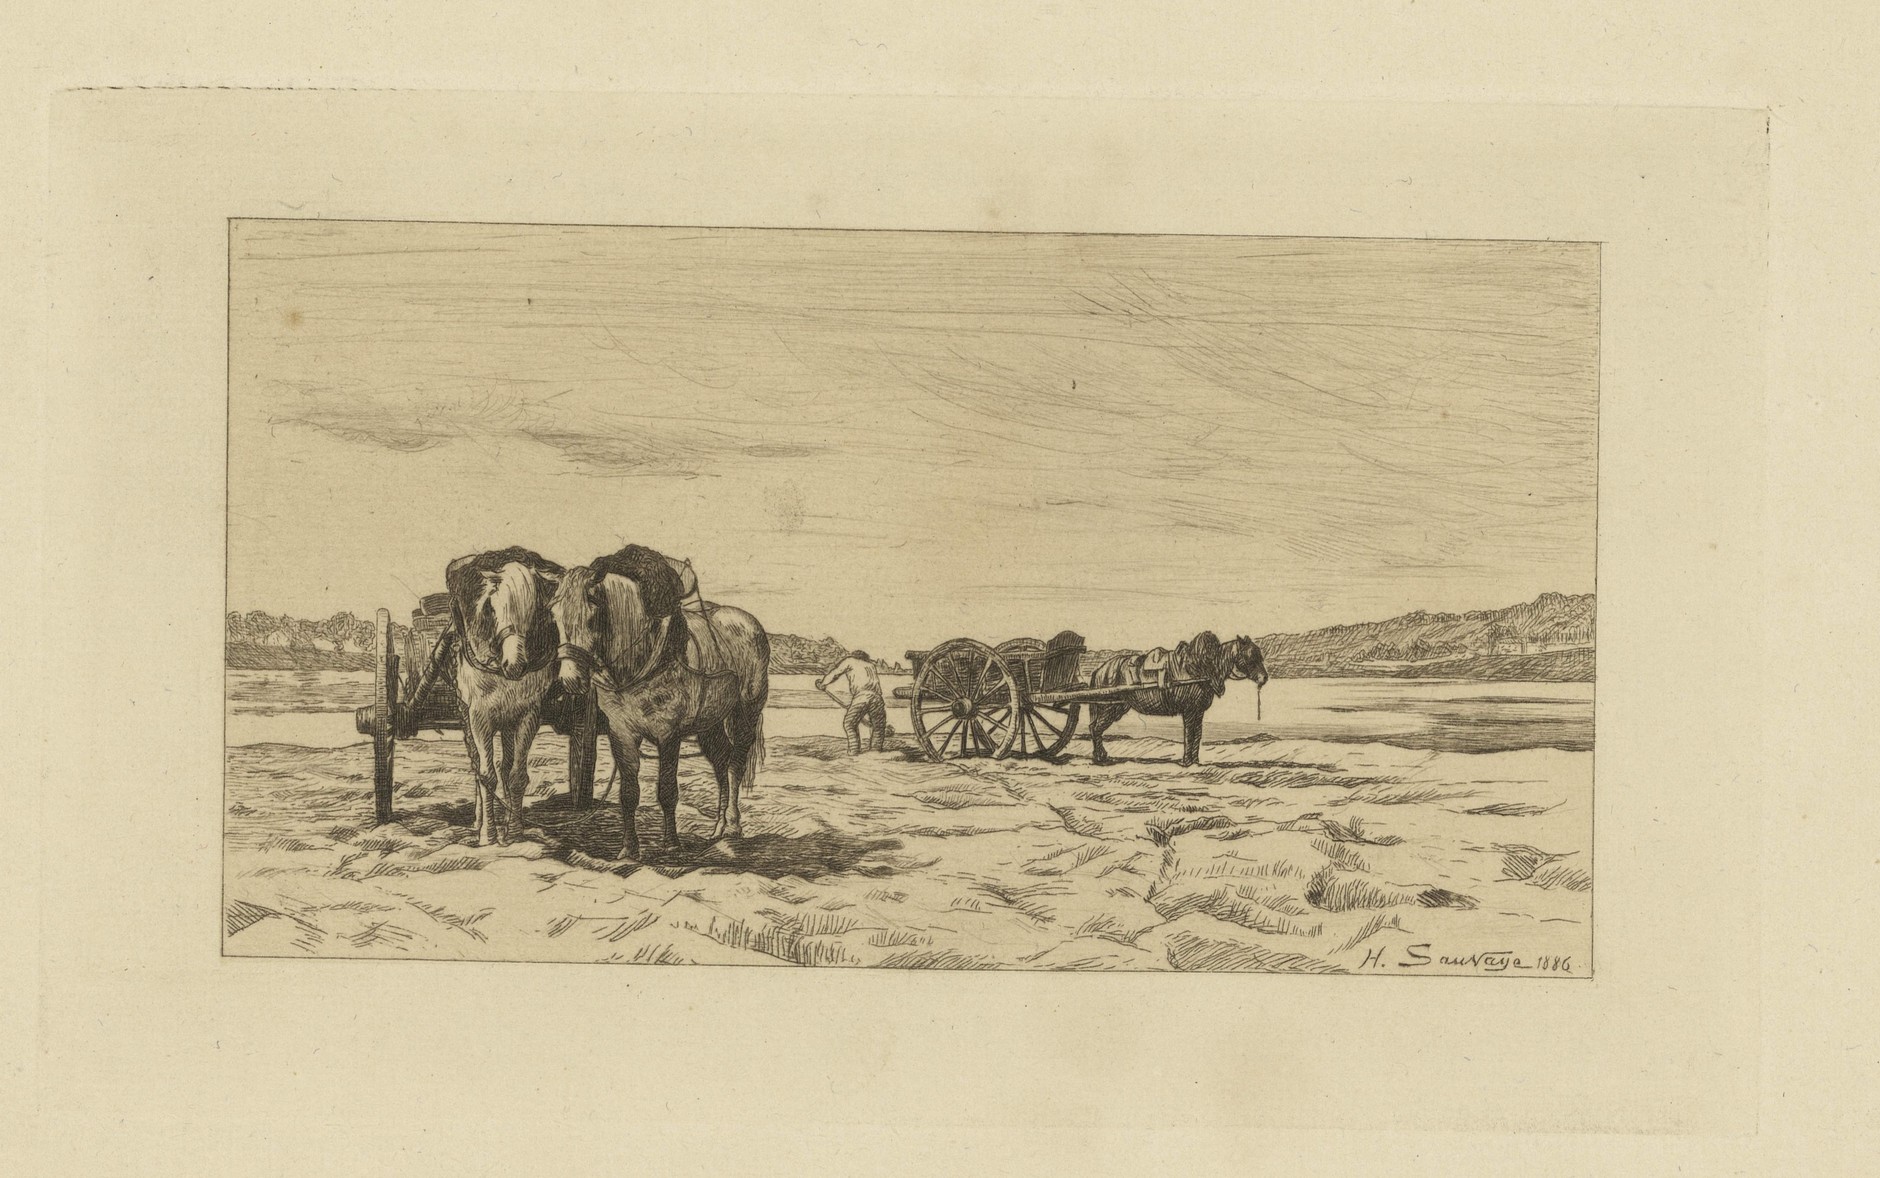 Henri Sauvage, Les tireurs de sable, eau forte, 1886